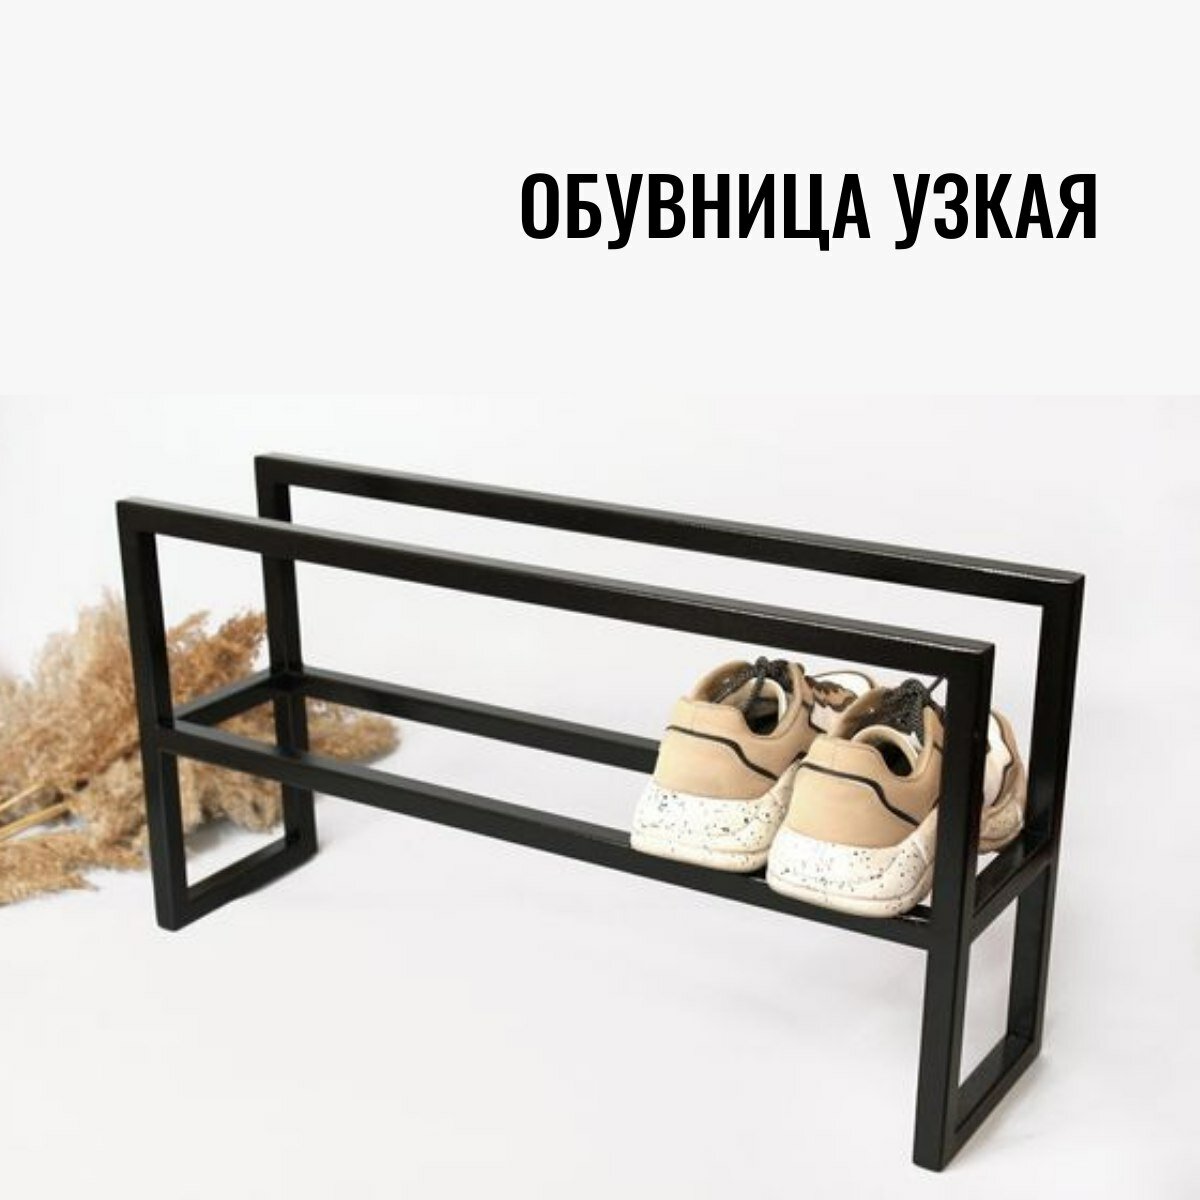 Обувница этажерка полка напольная узкая seta-2-80 черная